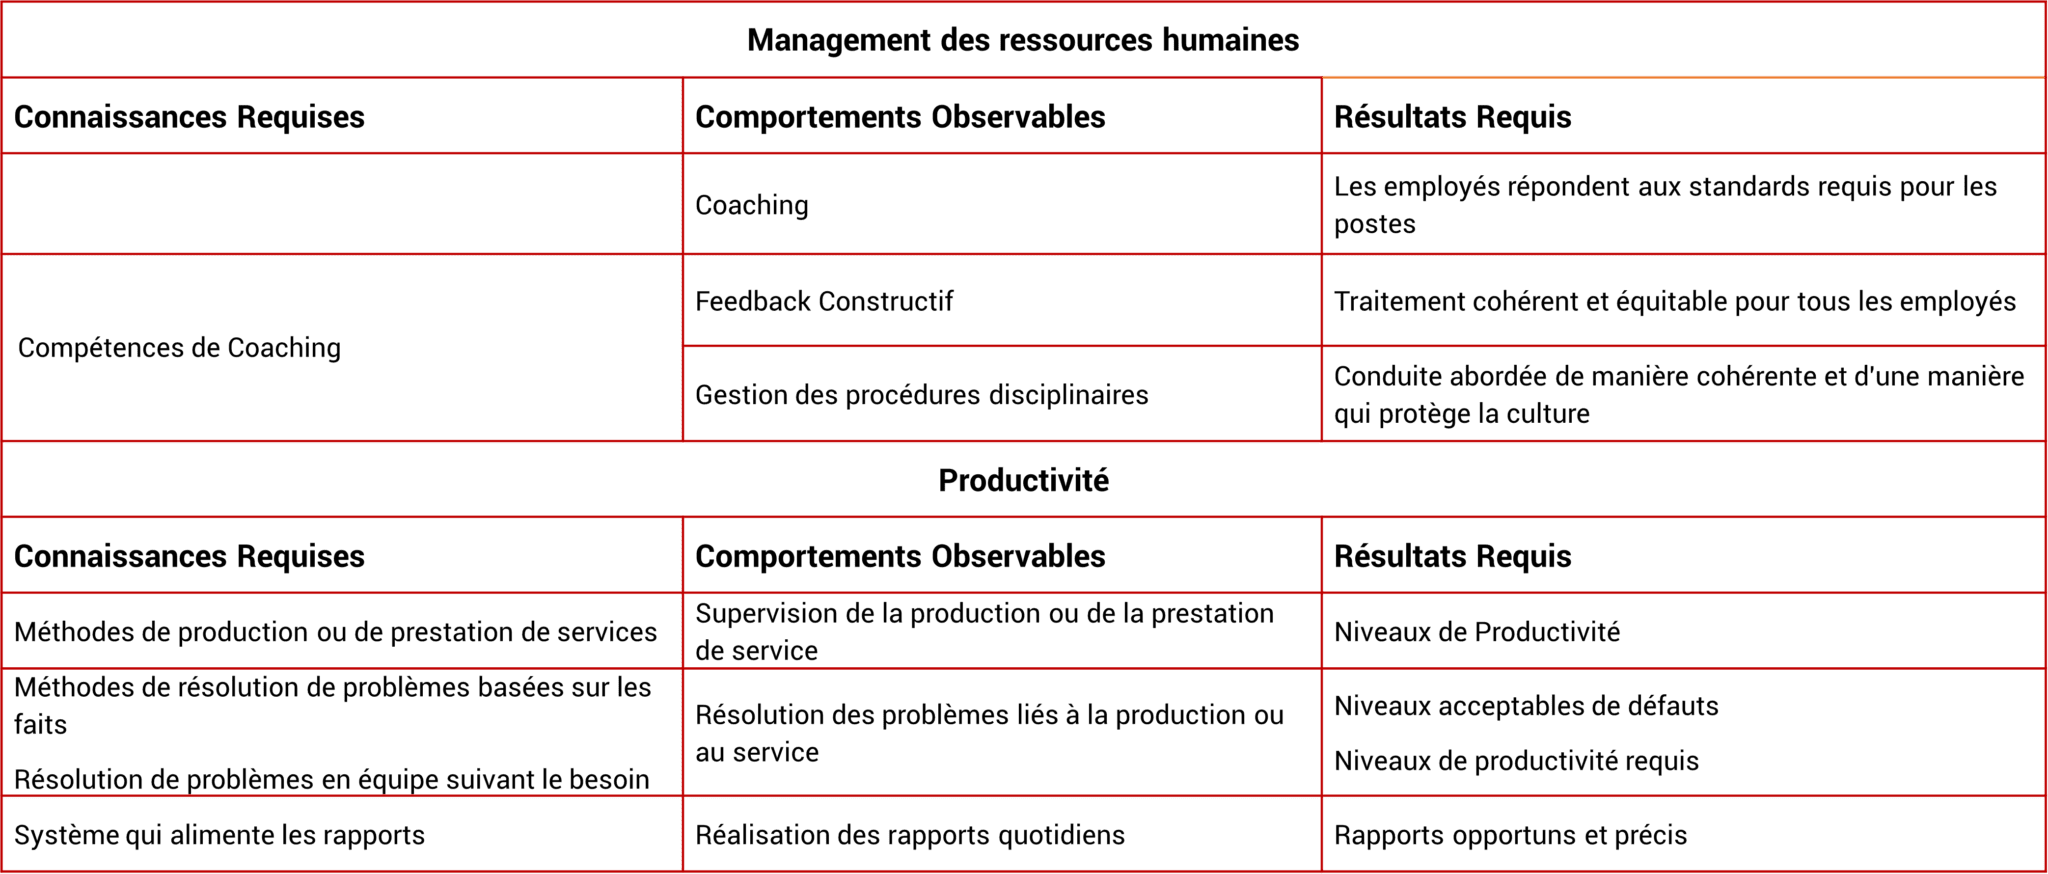 Programmes RH et management des ressources humaines